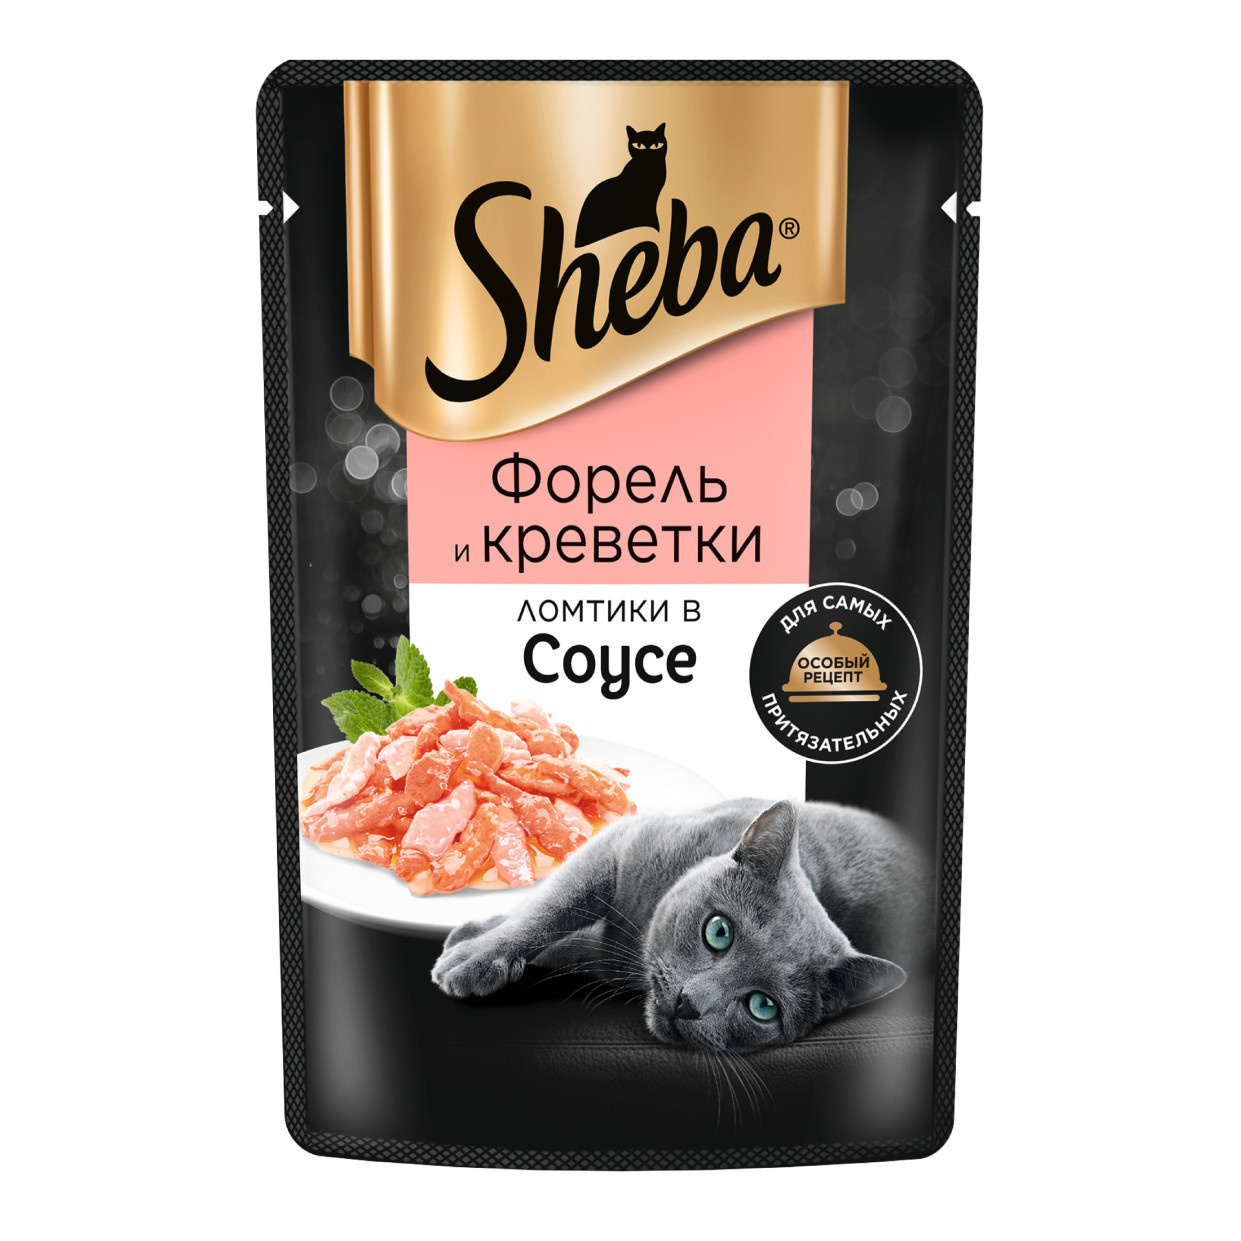 Sheba влажный корм для кошек «Ломтики в соусе, с форелью и креветками» (75 г) Sheba влажный корм для кошек «Ломтики в соусе, с форелью и креветками» (75 г) - фото 1